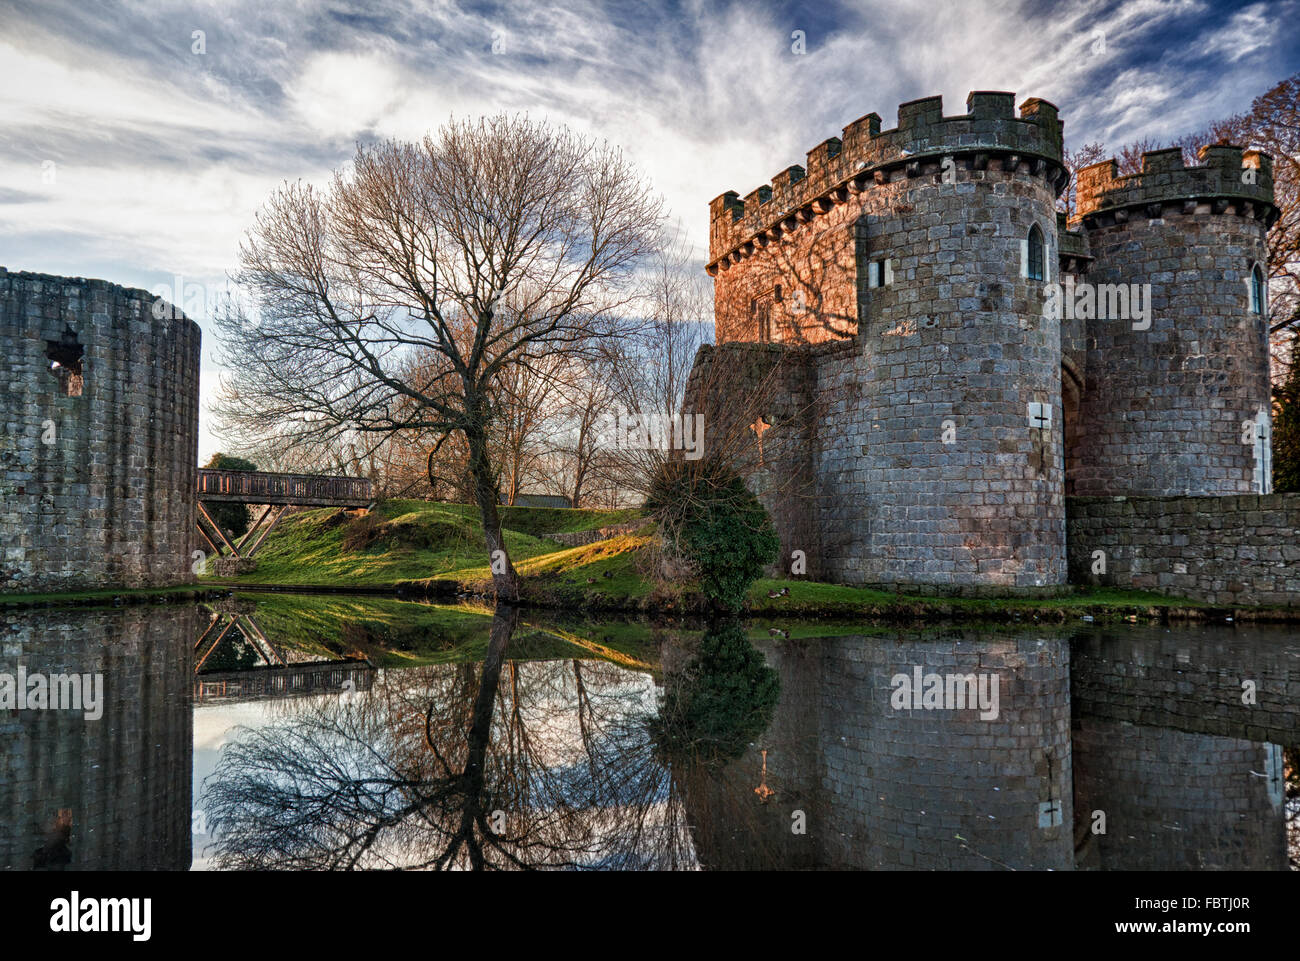 Whittington Castle in Shropshire reflecting on moat Stock Photo